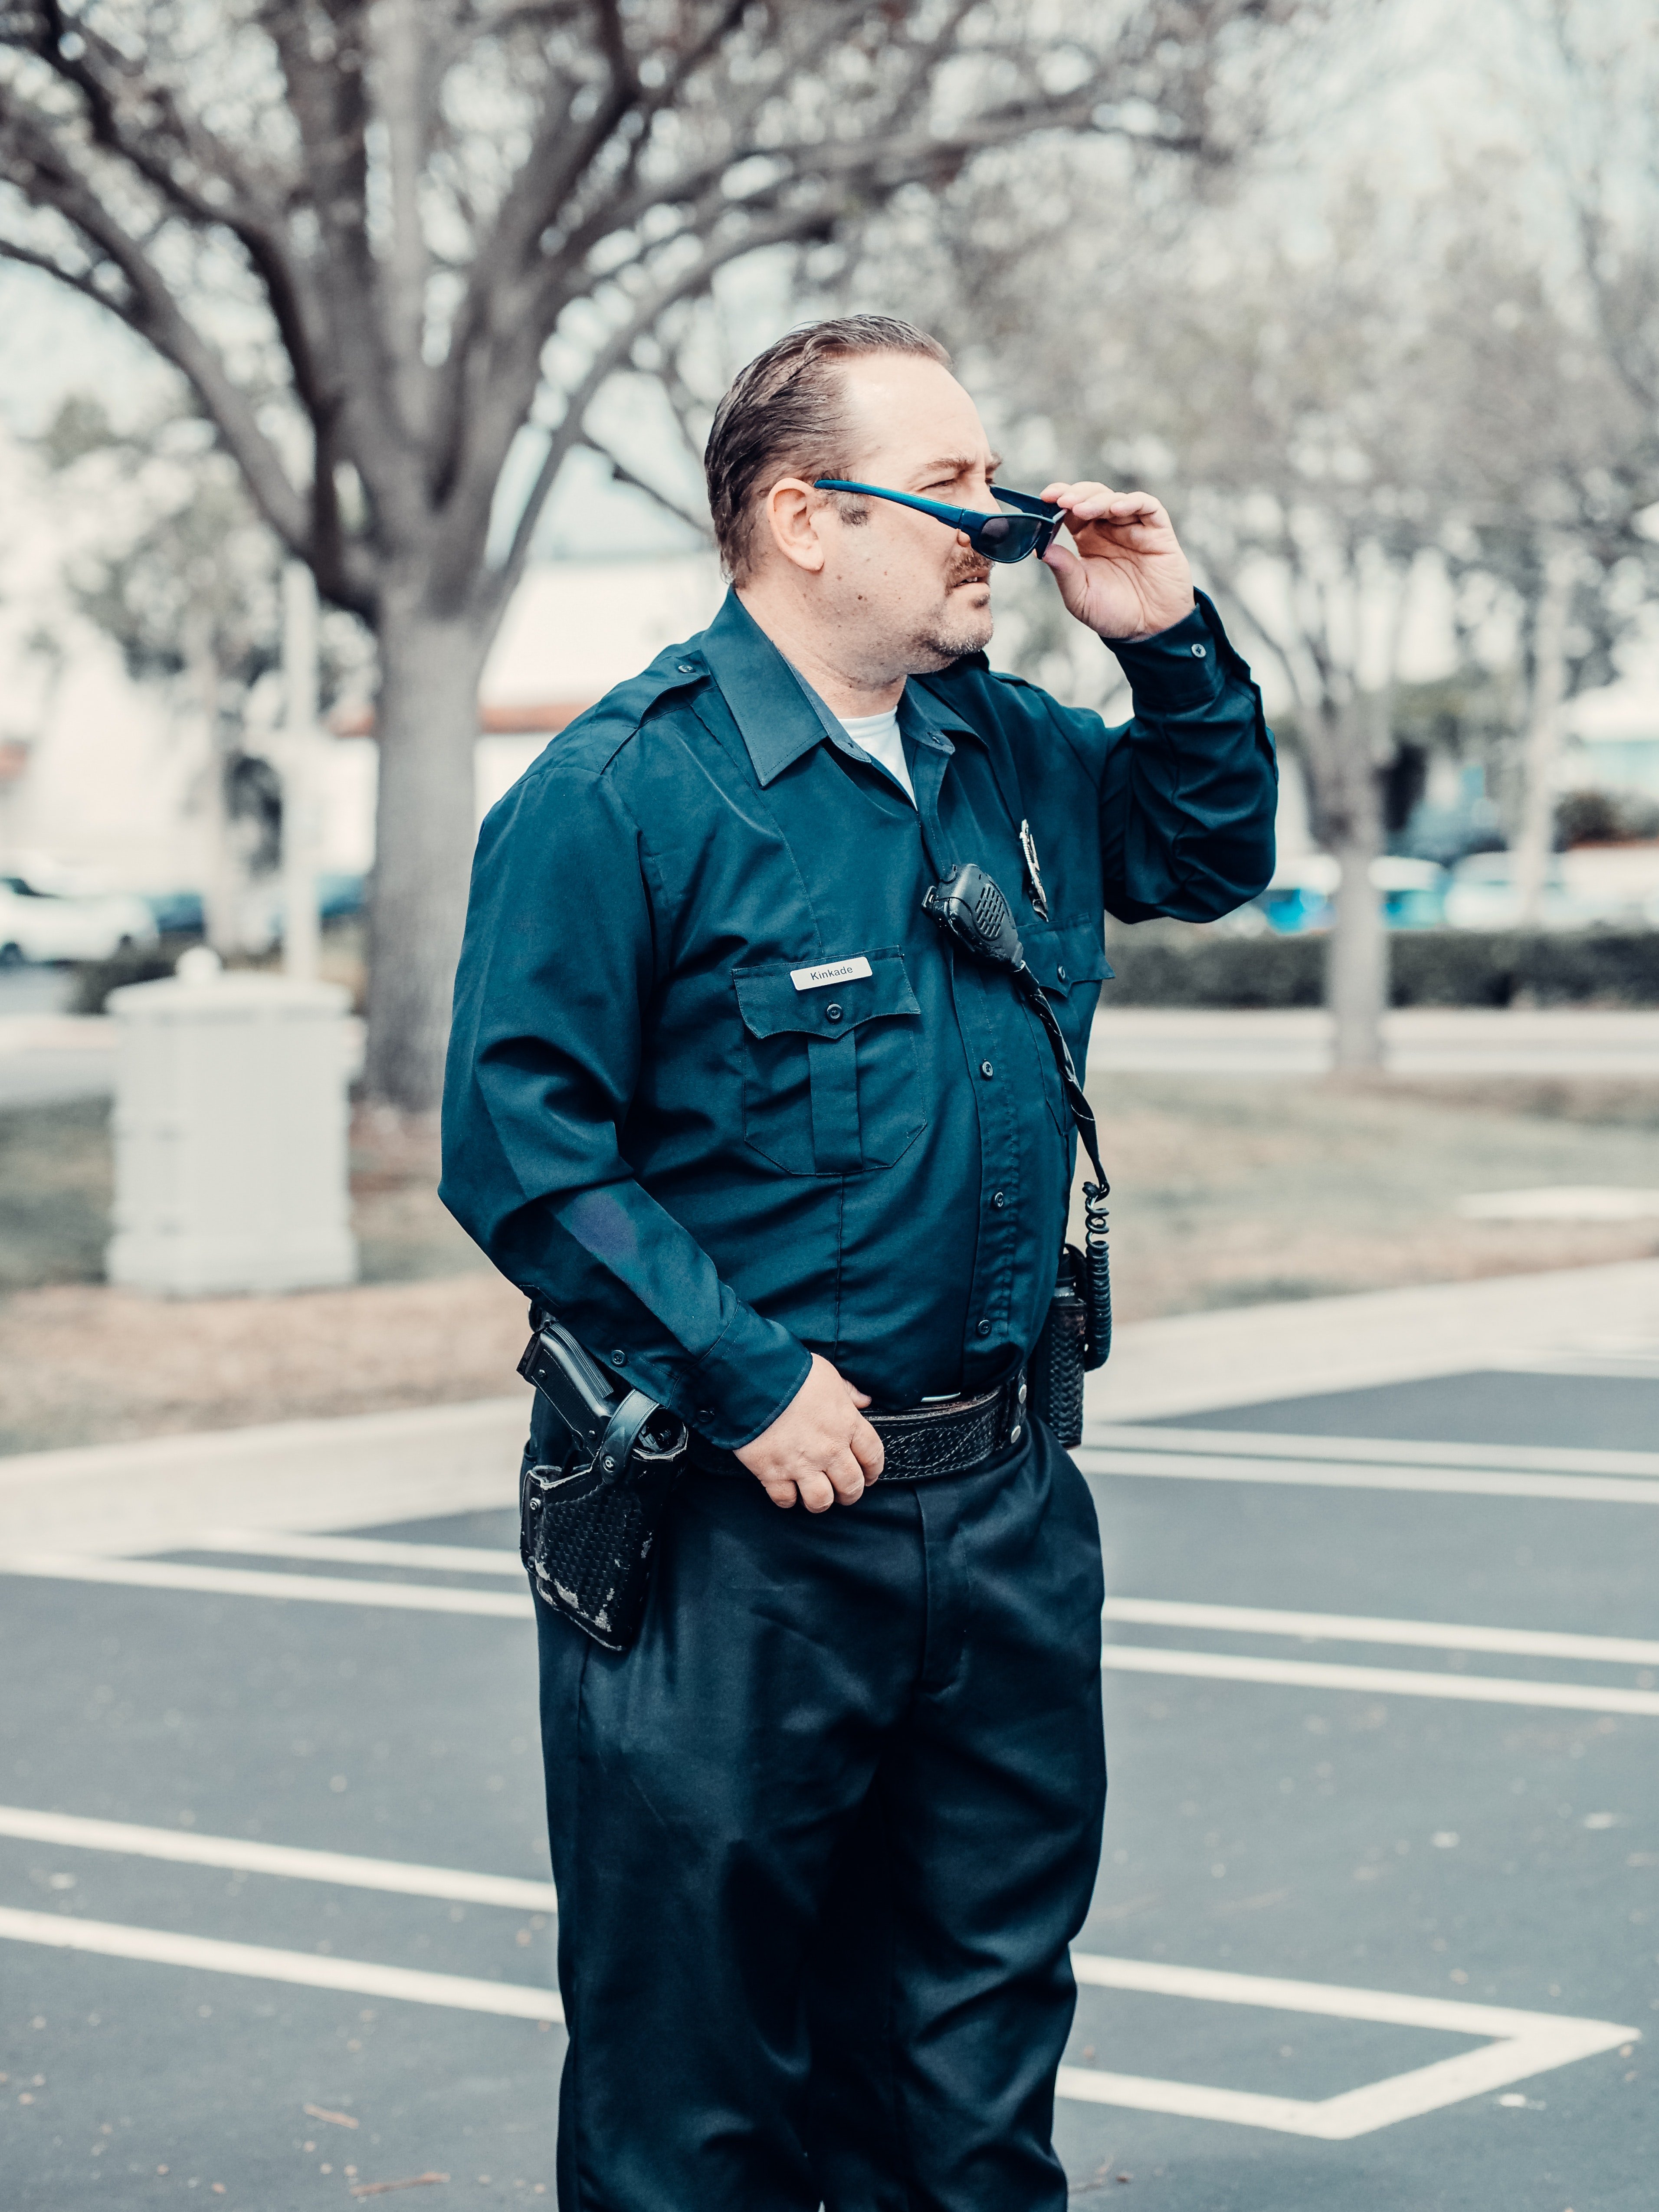 Un officier en uniforme bleu debout sur la route. | Photo : Pexels/Kindle Media